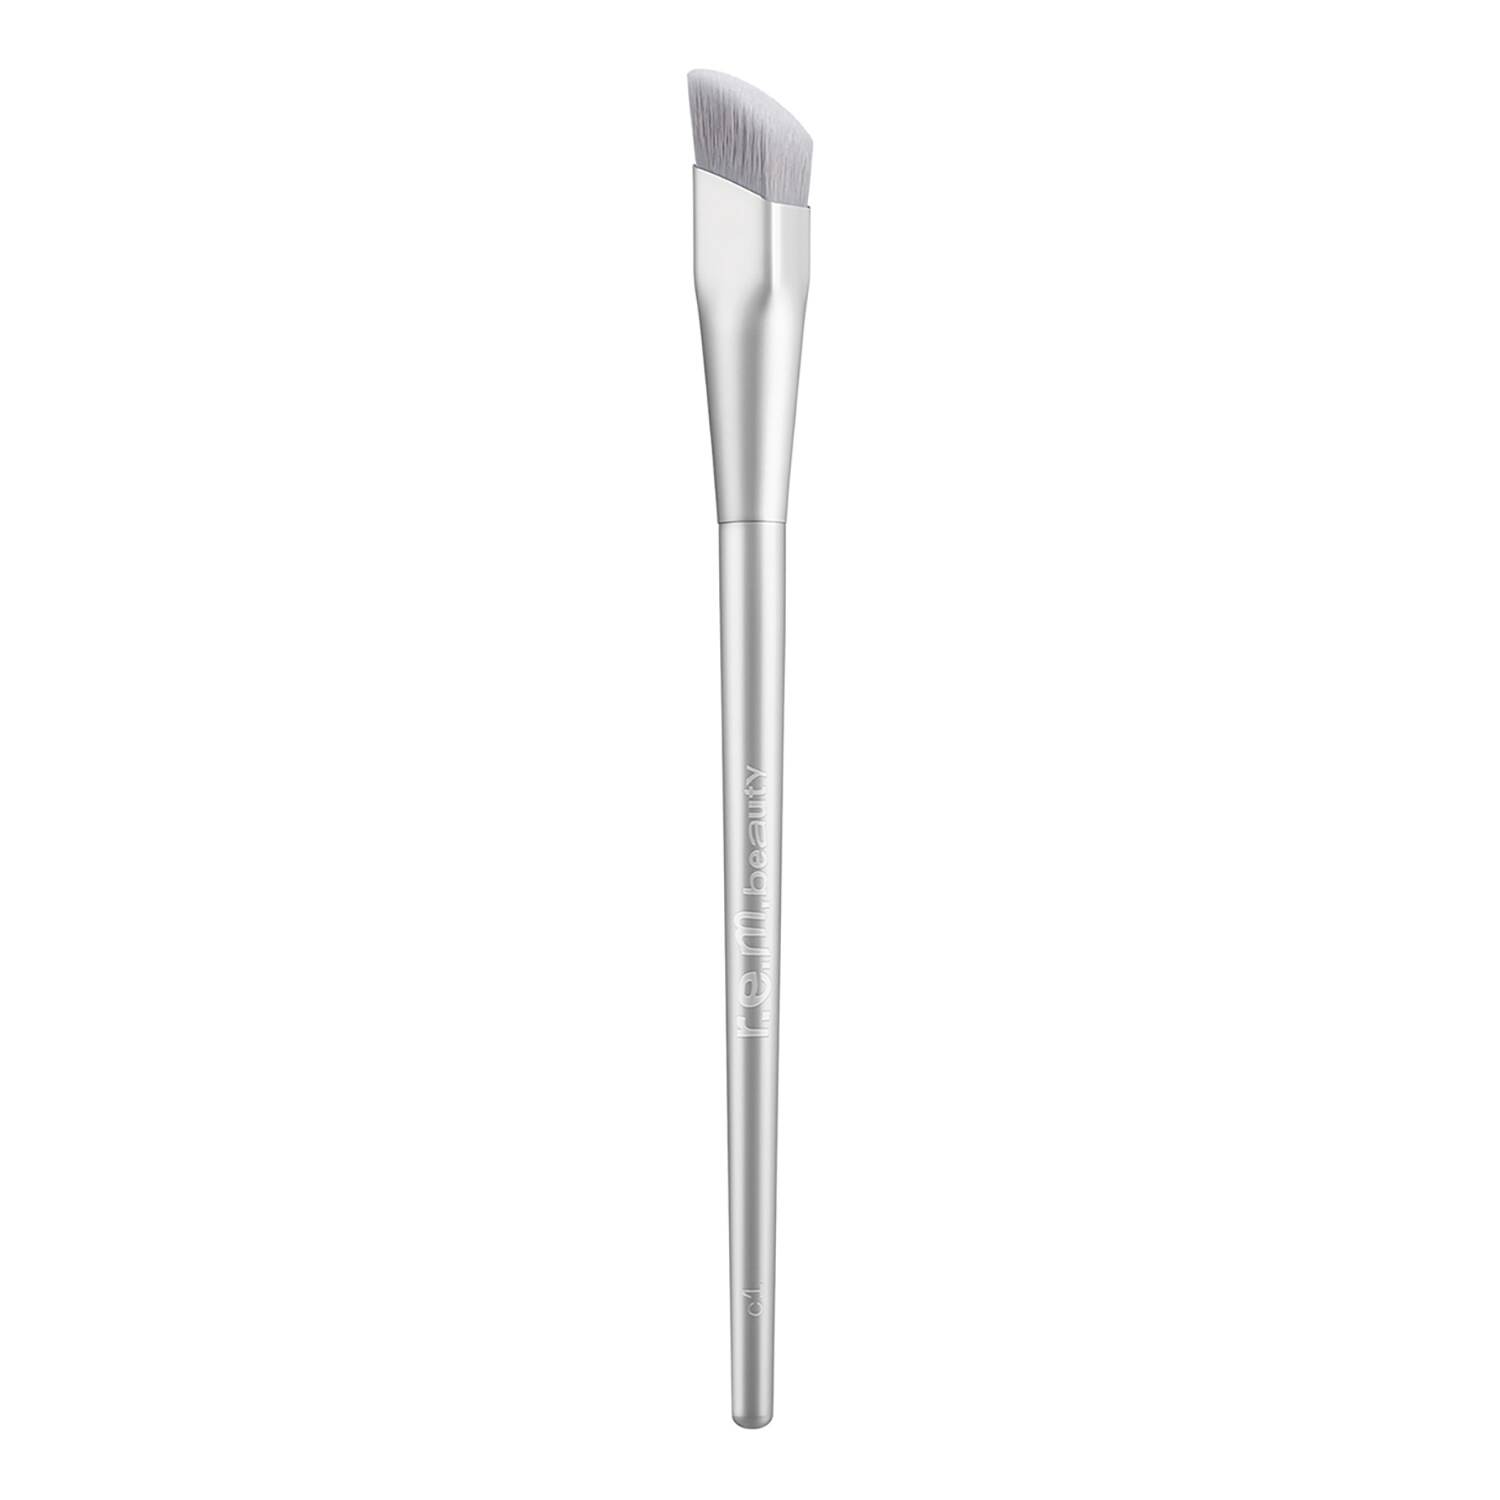 Rem Beauty C1 Concealer Brush 12G